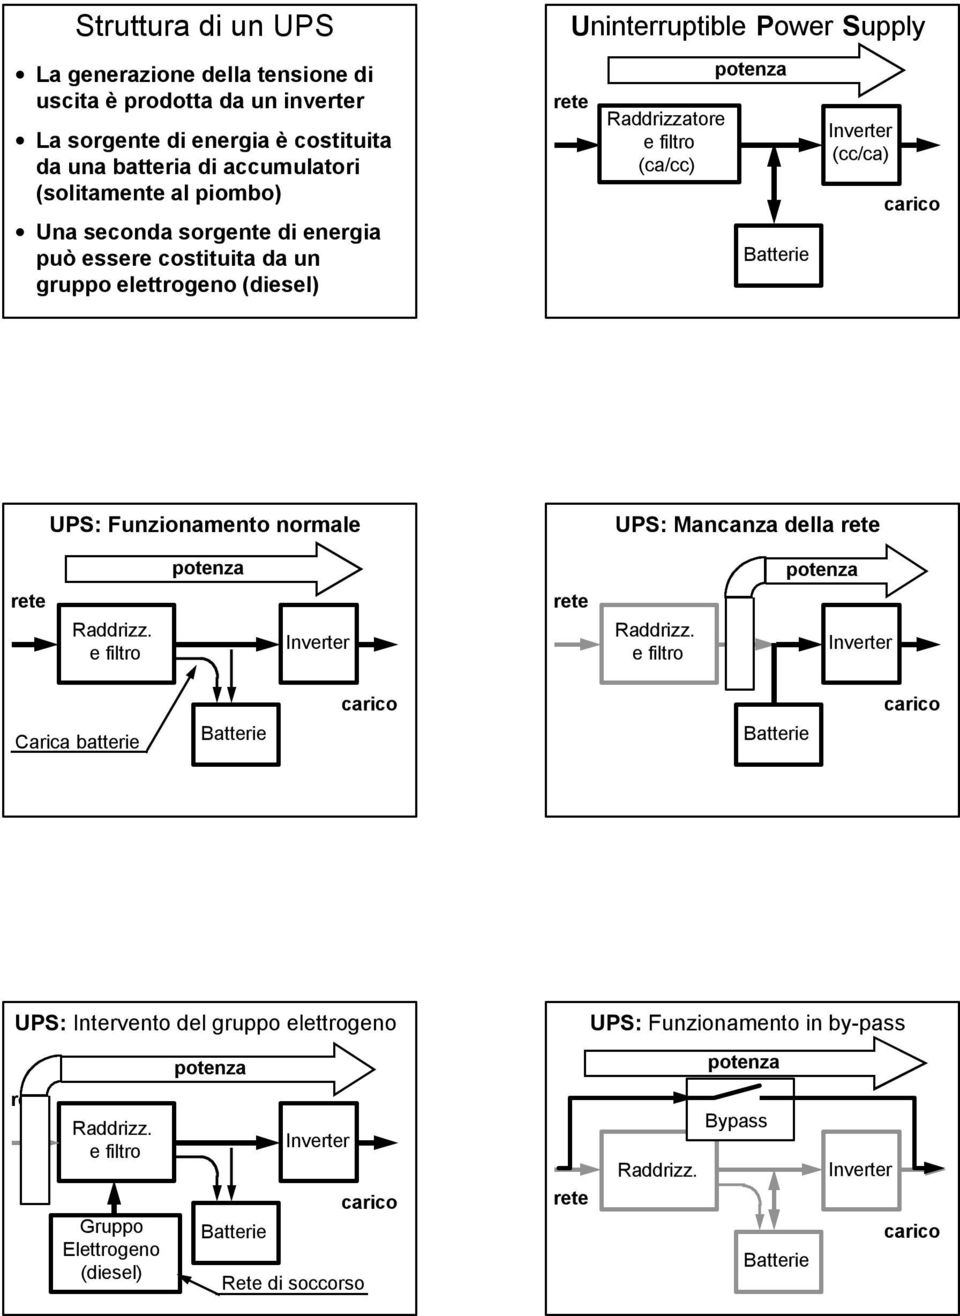 elettrogeno (diesel) Uninterruptible Power Supply Raddrizzatore (ca/cc) (cc/ca) UPS: Funzionamento normale UPS: Mancanza della